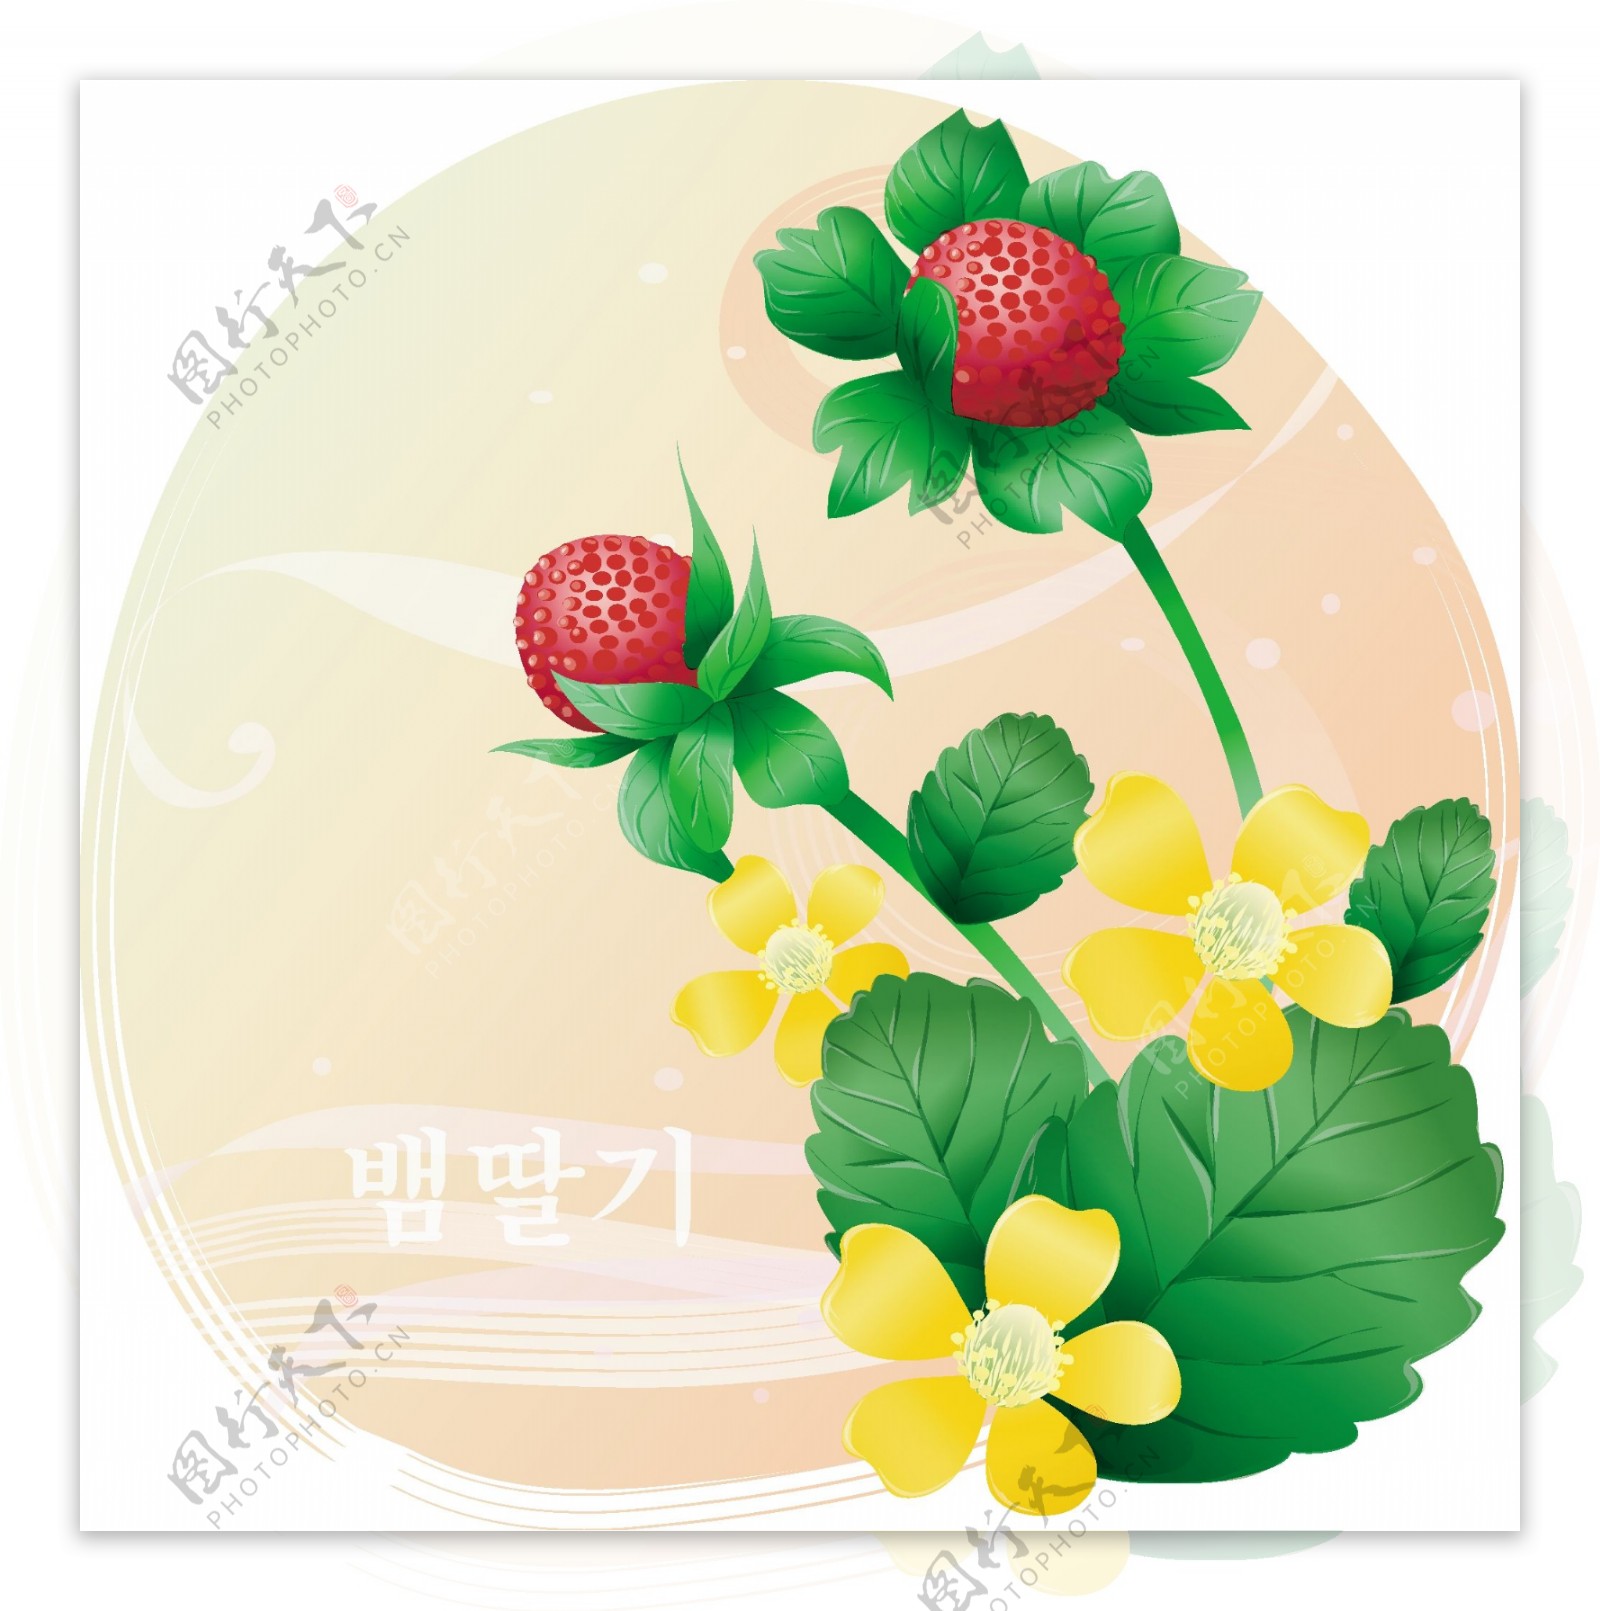 韩国边框素材野草莓